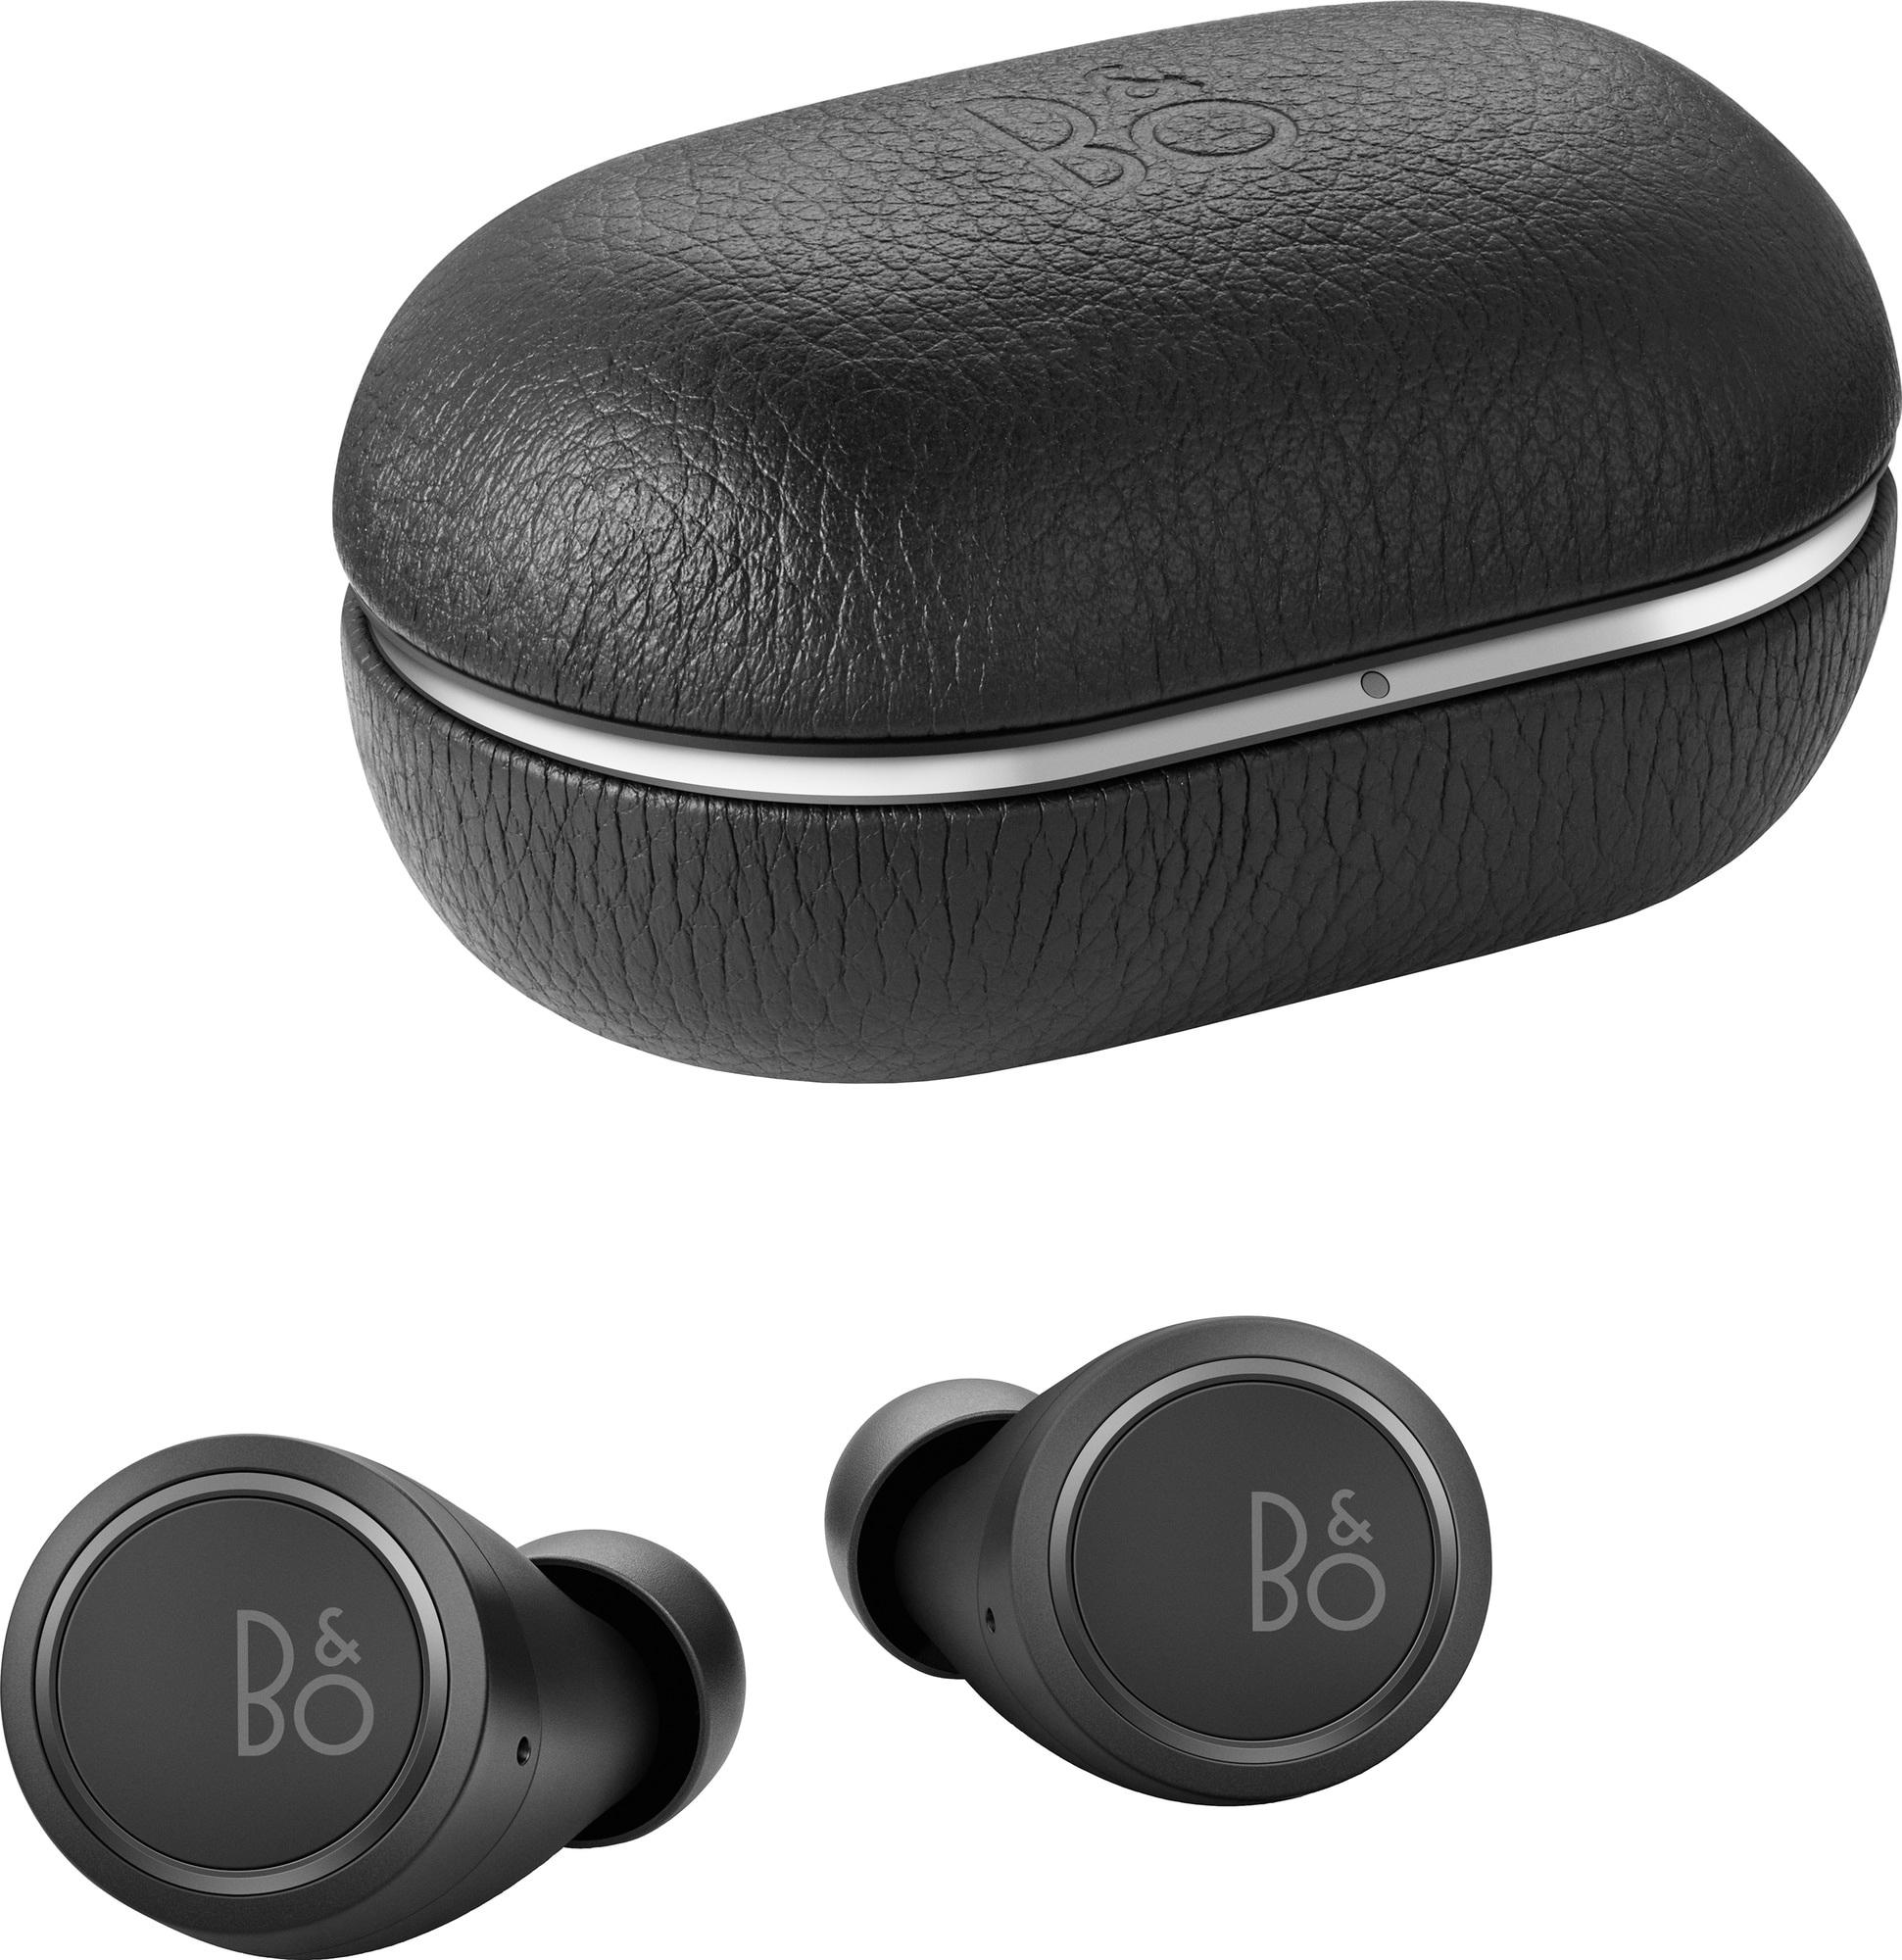 B&O Beoplay E8 3.0 trådløse høretelefoner (sort) | Elgiganten